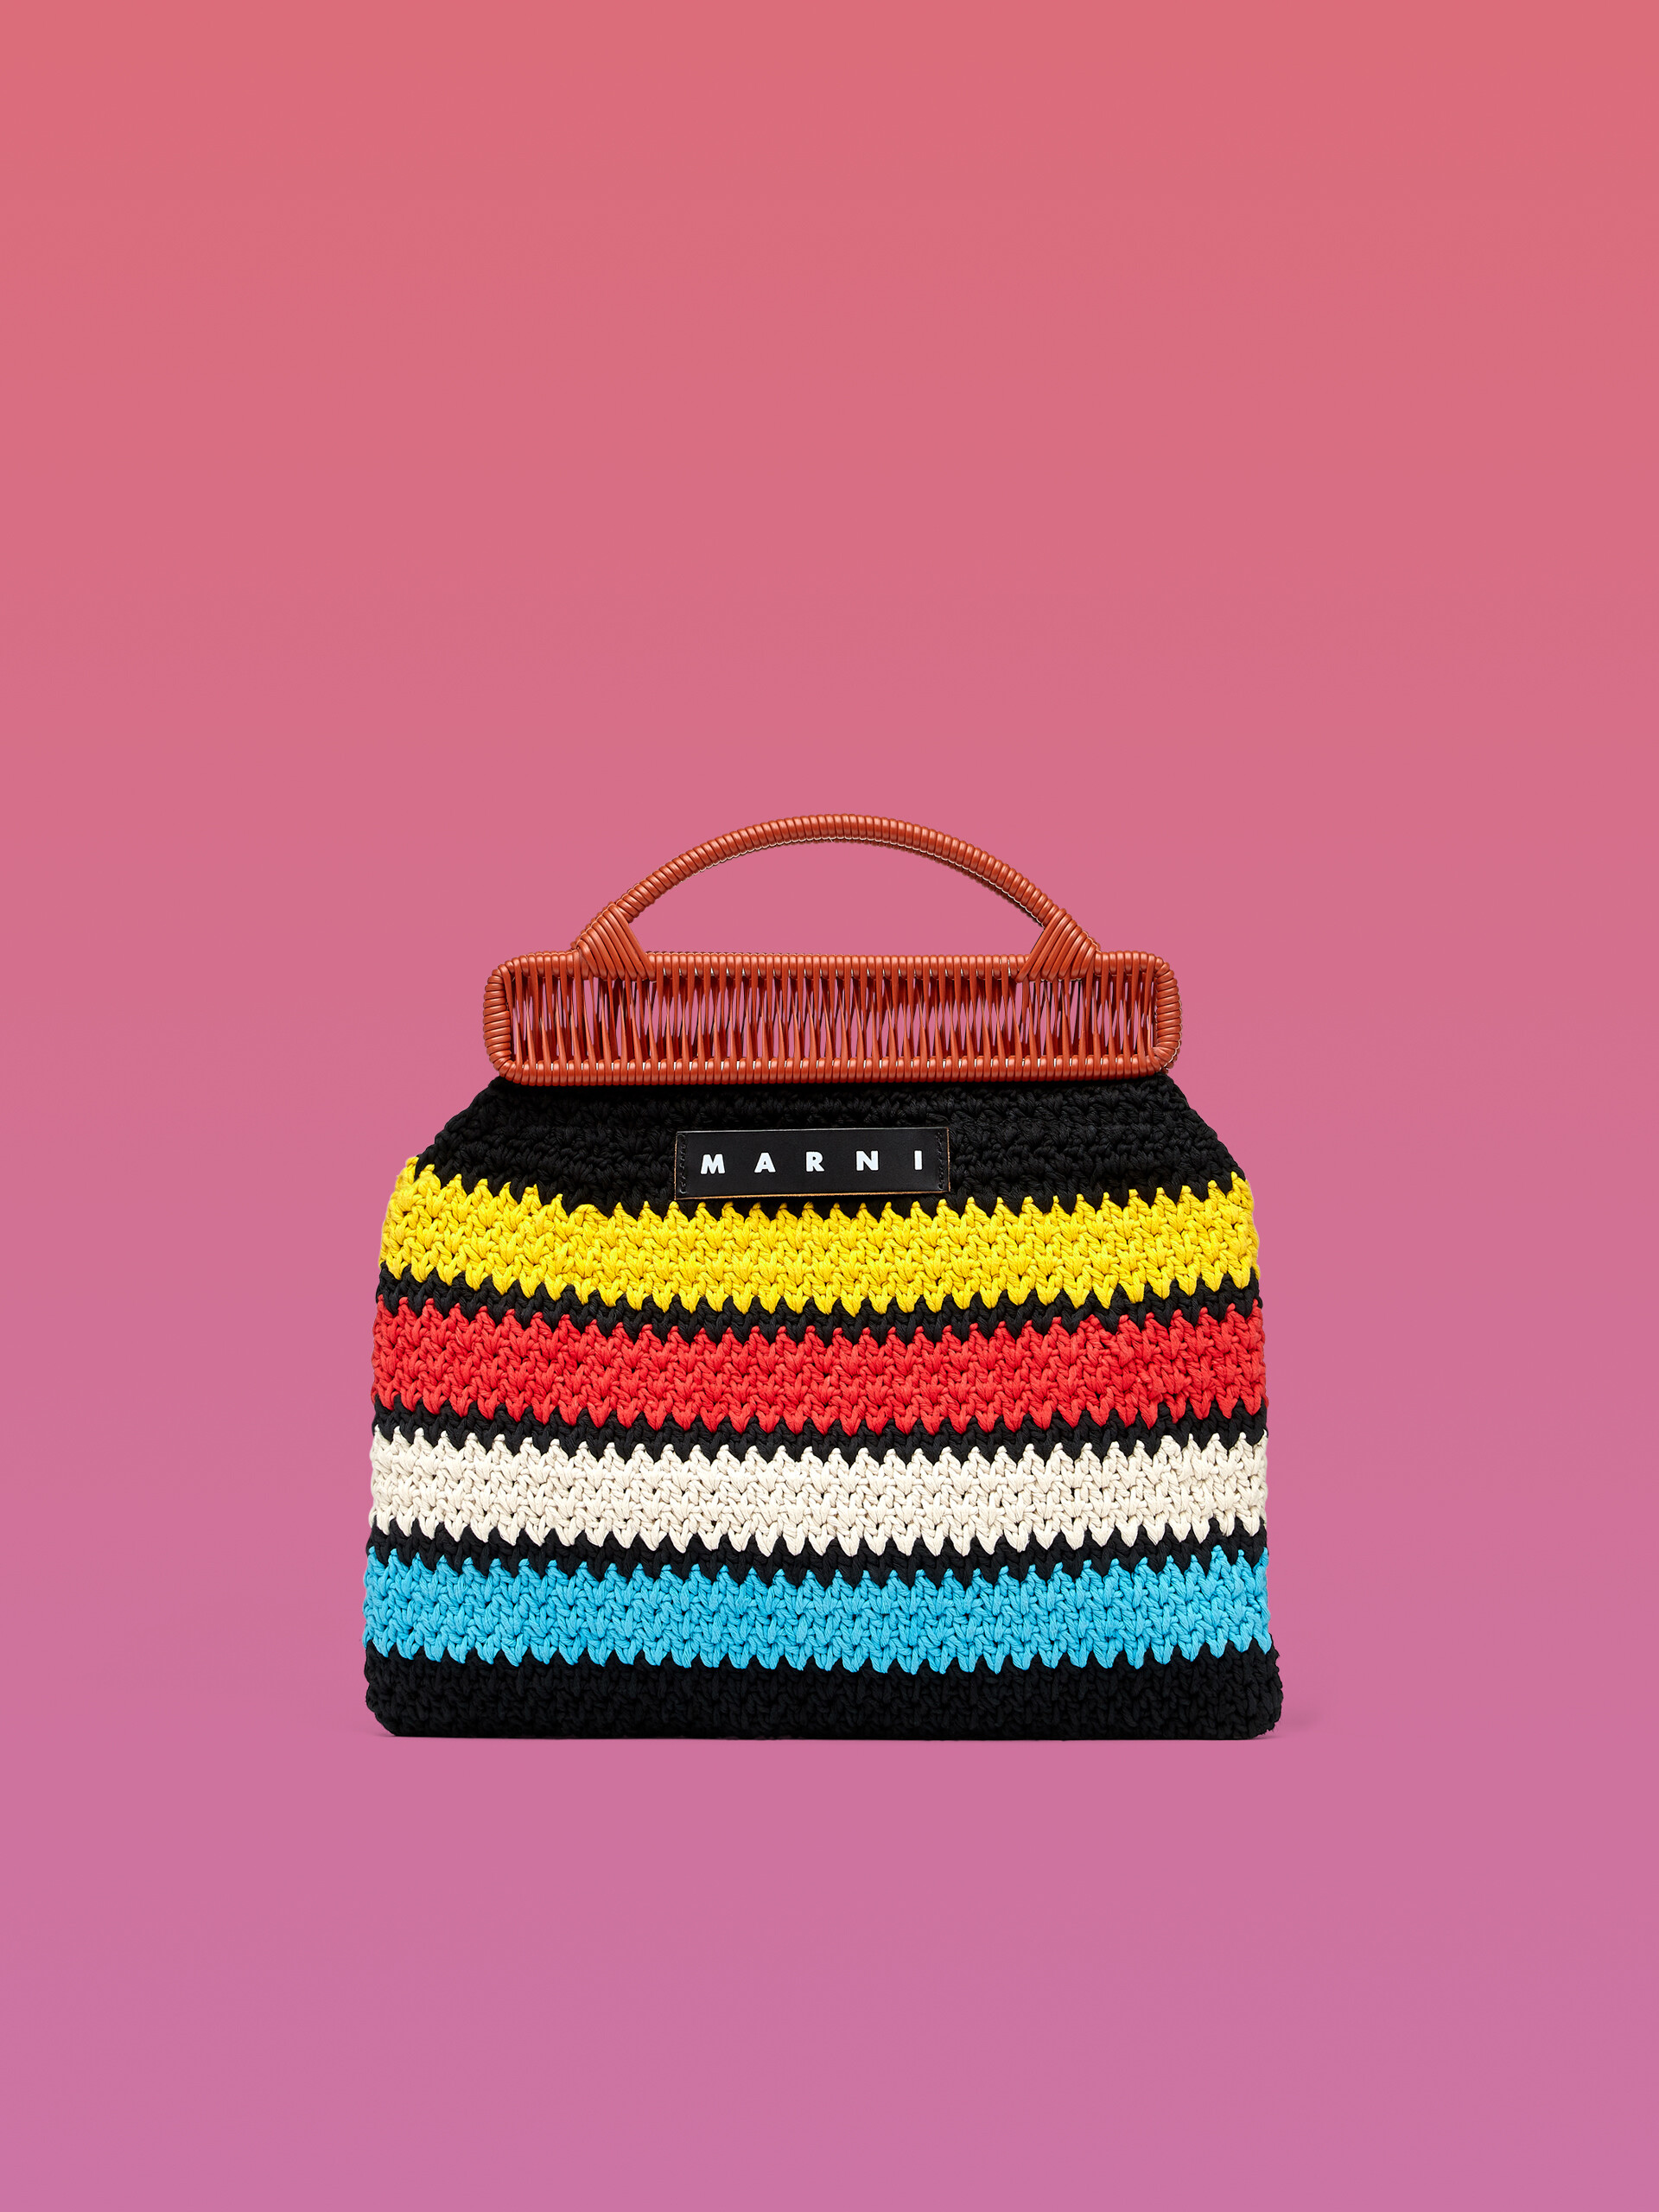 MARNI MARKET bag in multicolor crochet cotton - Furniture - Image 1